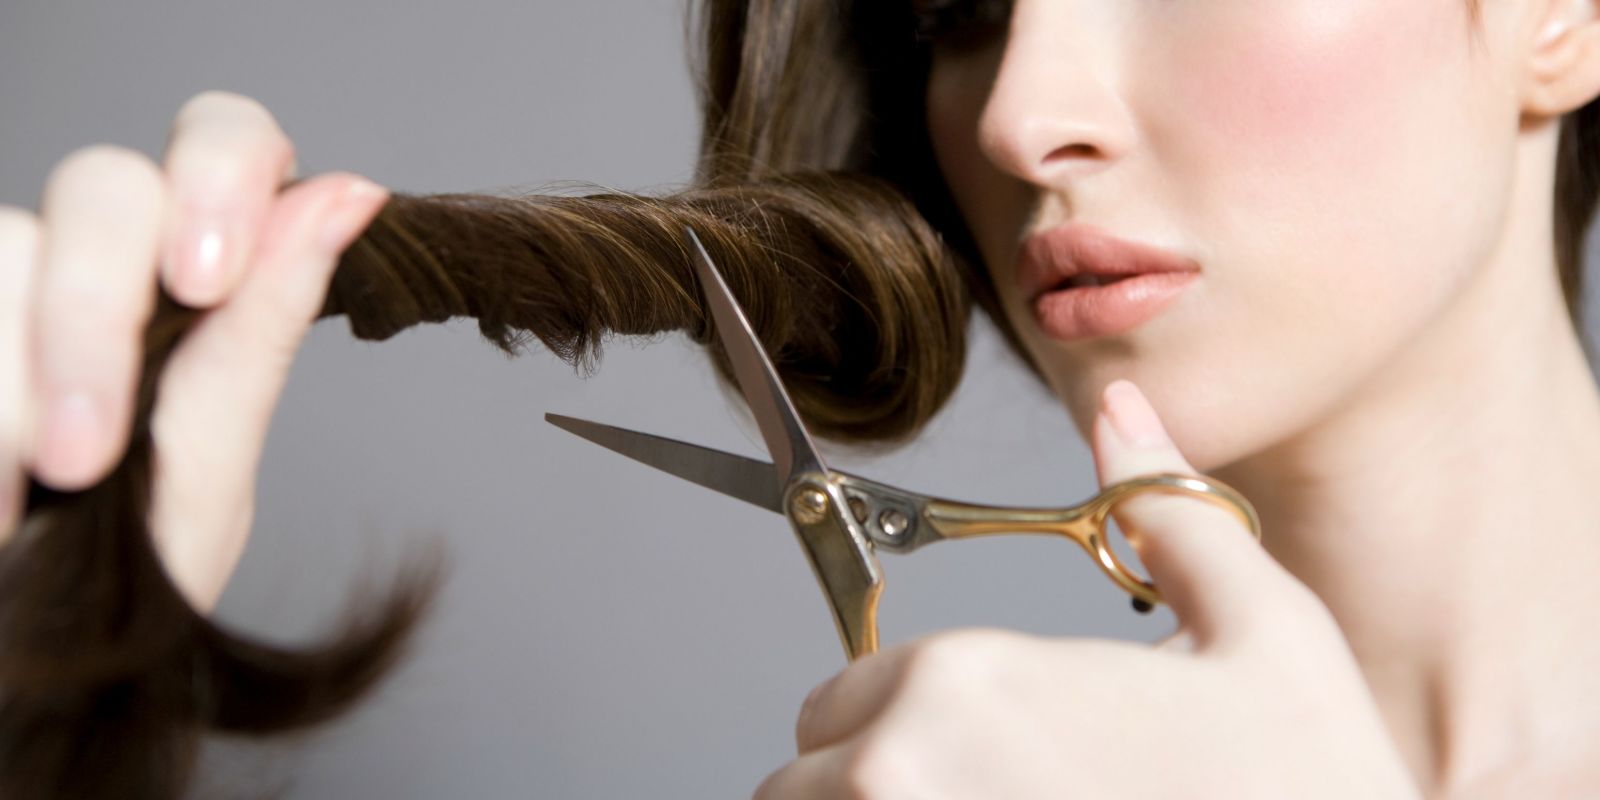 Cách làm tóc hết xoăn sau khi uốn để bạn giữ được nếp tóc đi vào “khuôn khổ” gọn gàng - Ảnh 5